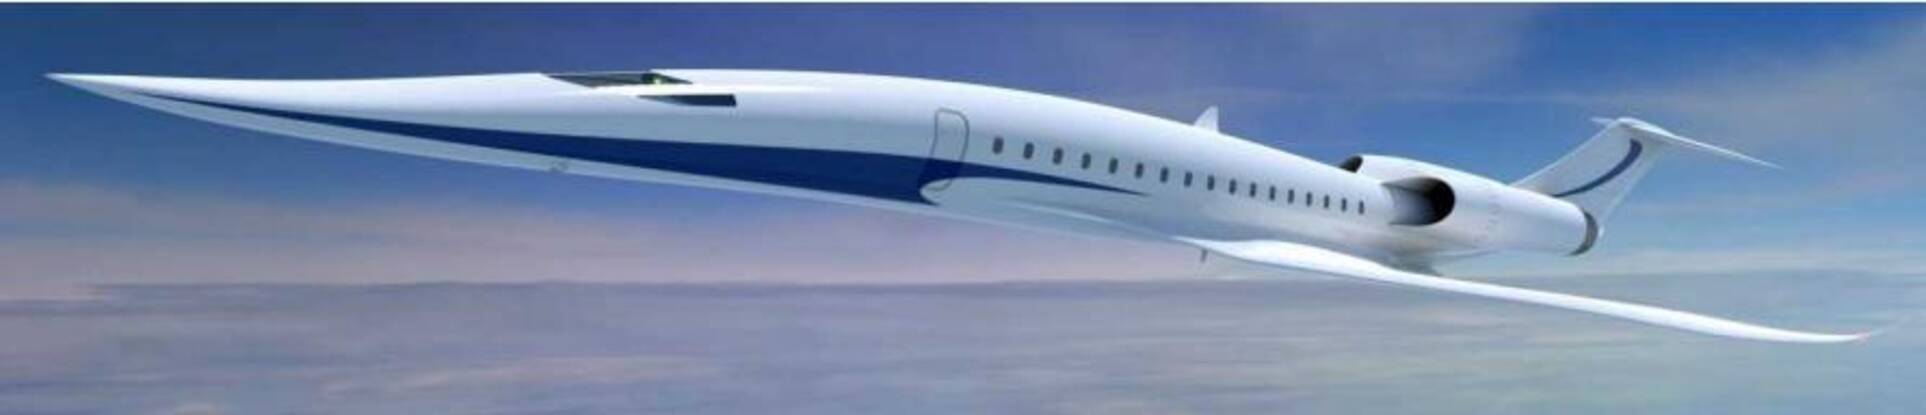 マッハで飛ぶ超音速機 衝撃音の低減実験に成功 世界初 Jaxa 15年12月25日 エキサイトニュース